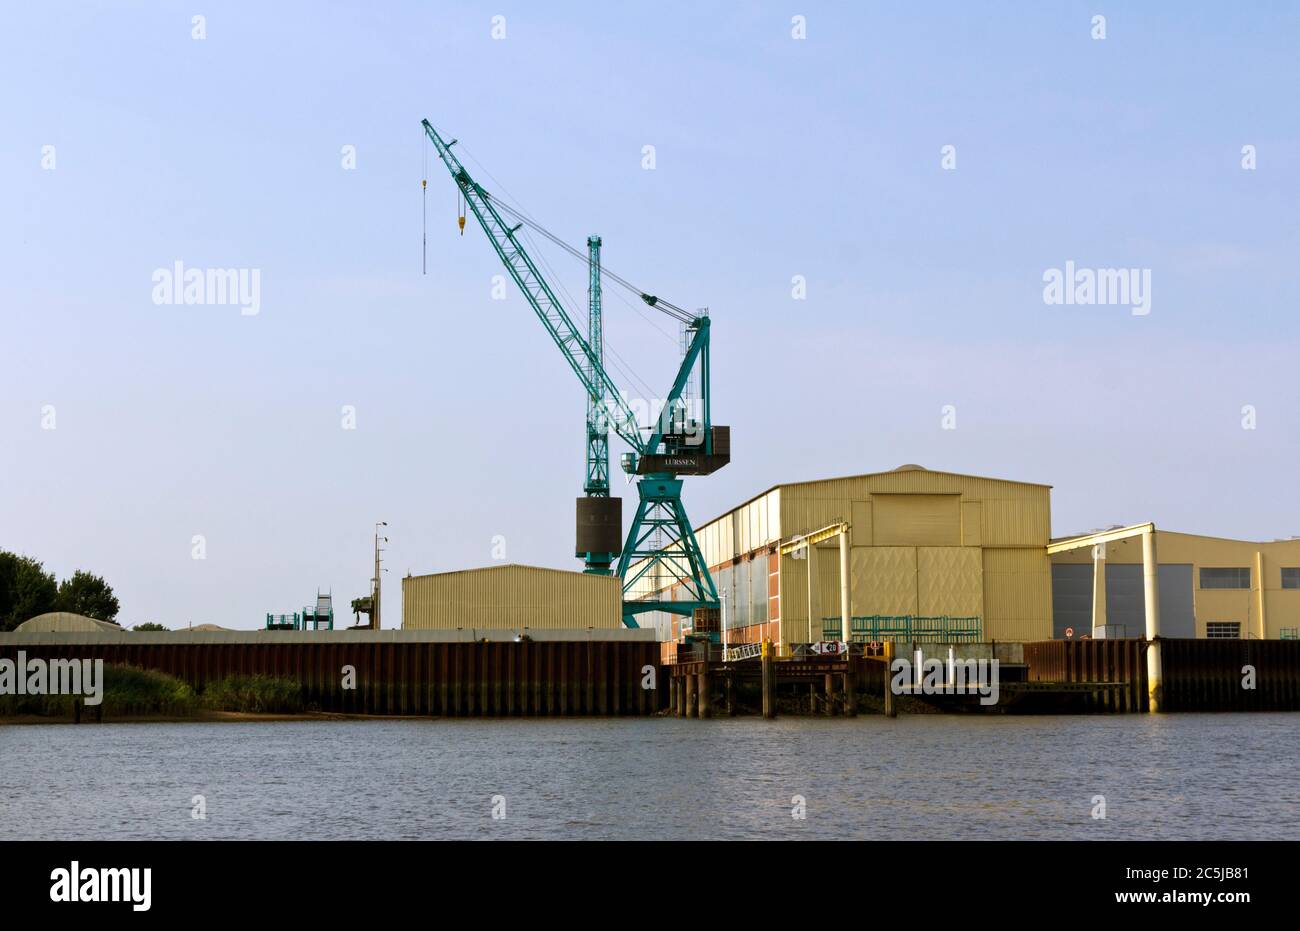 Lürssen Shipyard on River Weser, Vegesack, Bremen, Germany Stock Photo